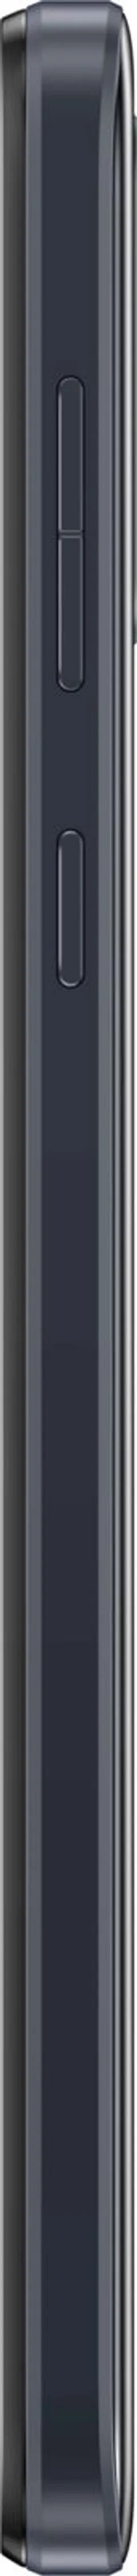 Motorola e13 64 GB älypuhelin, musta - 4